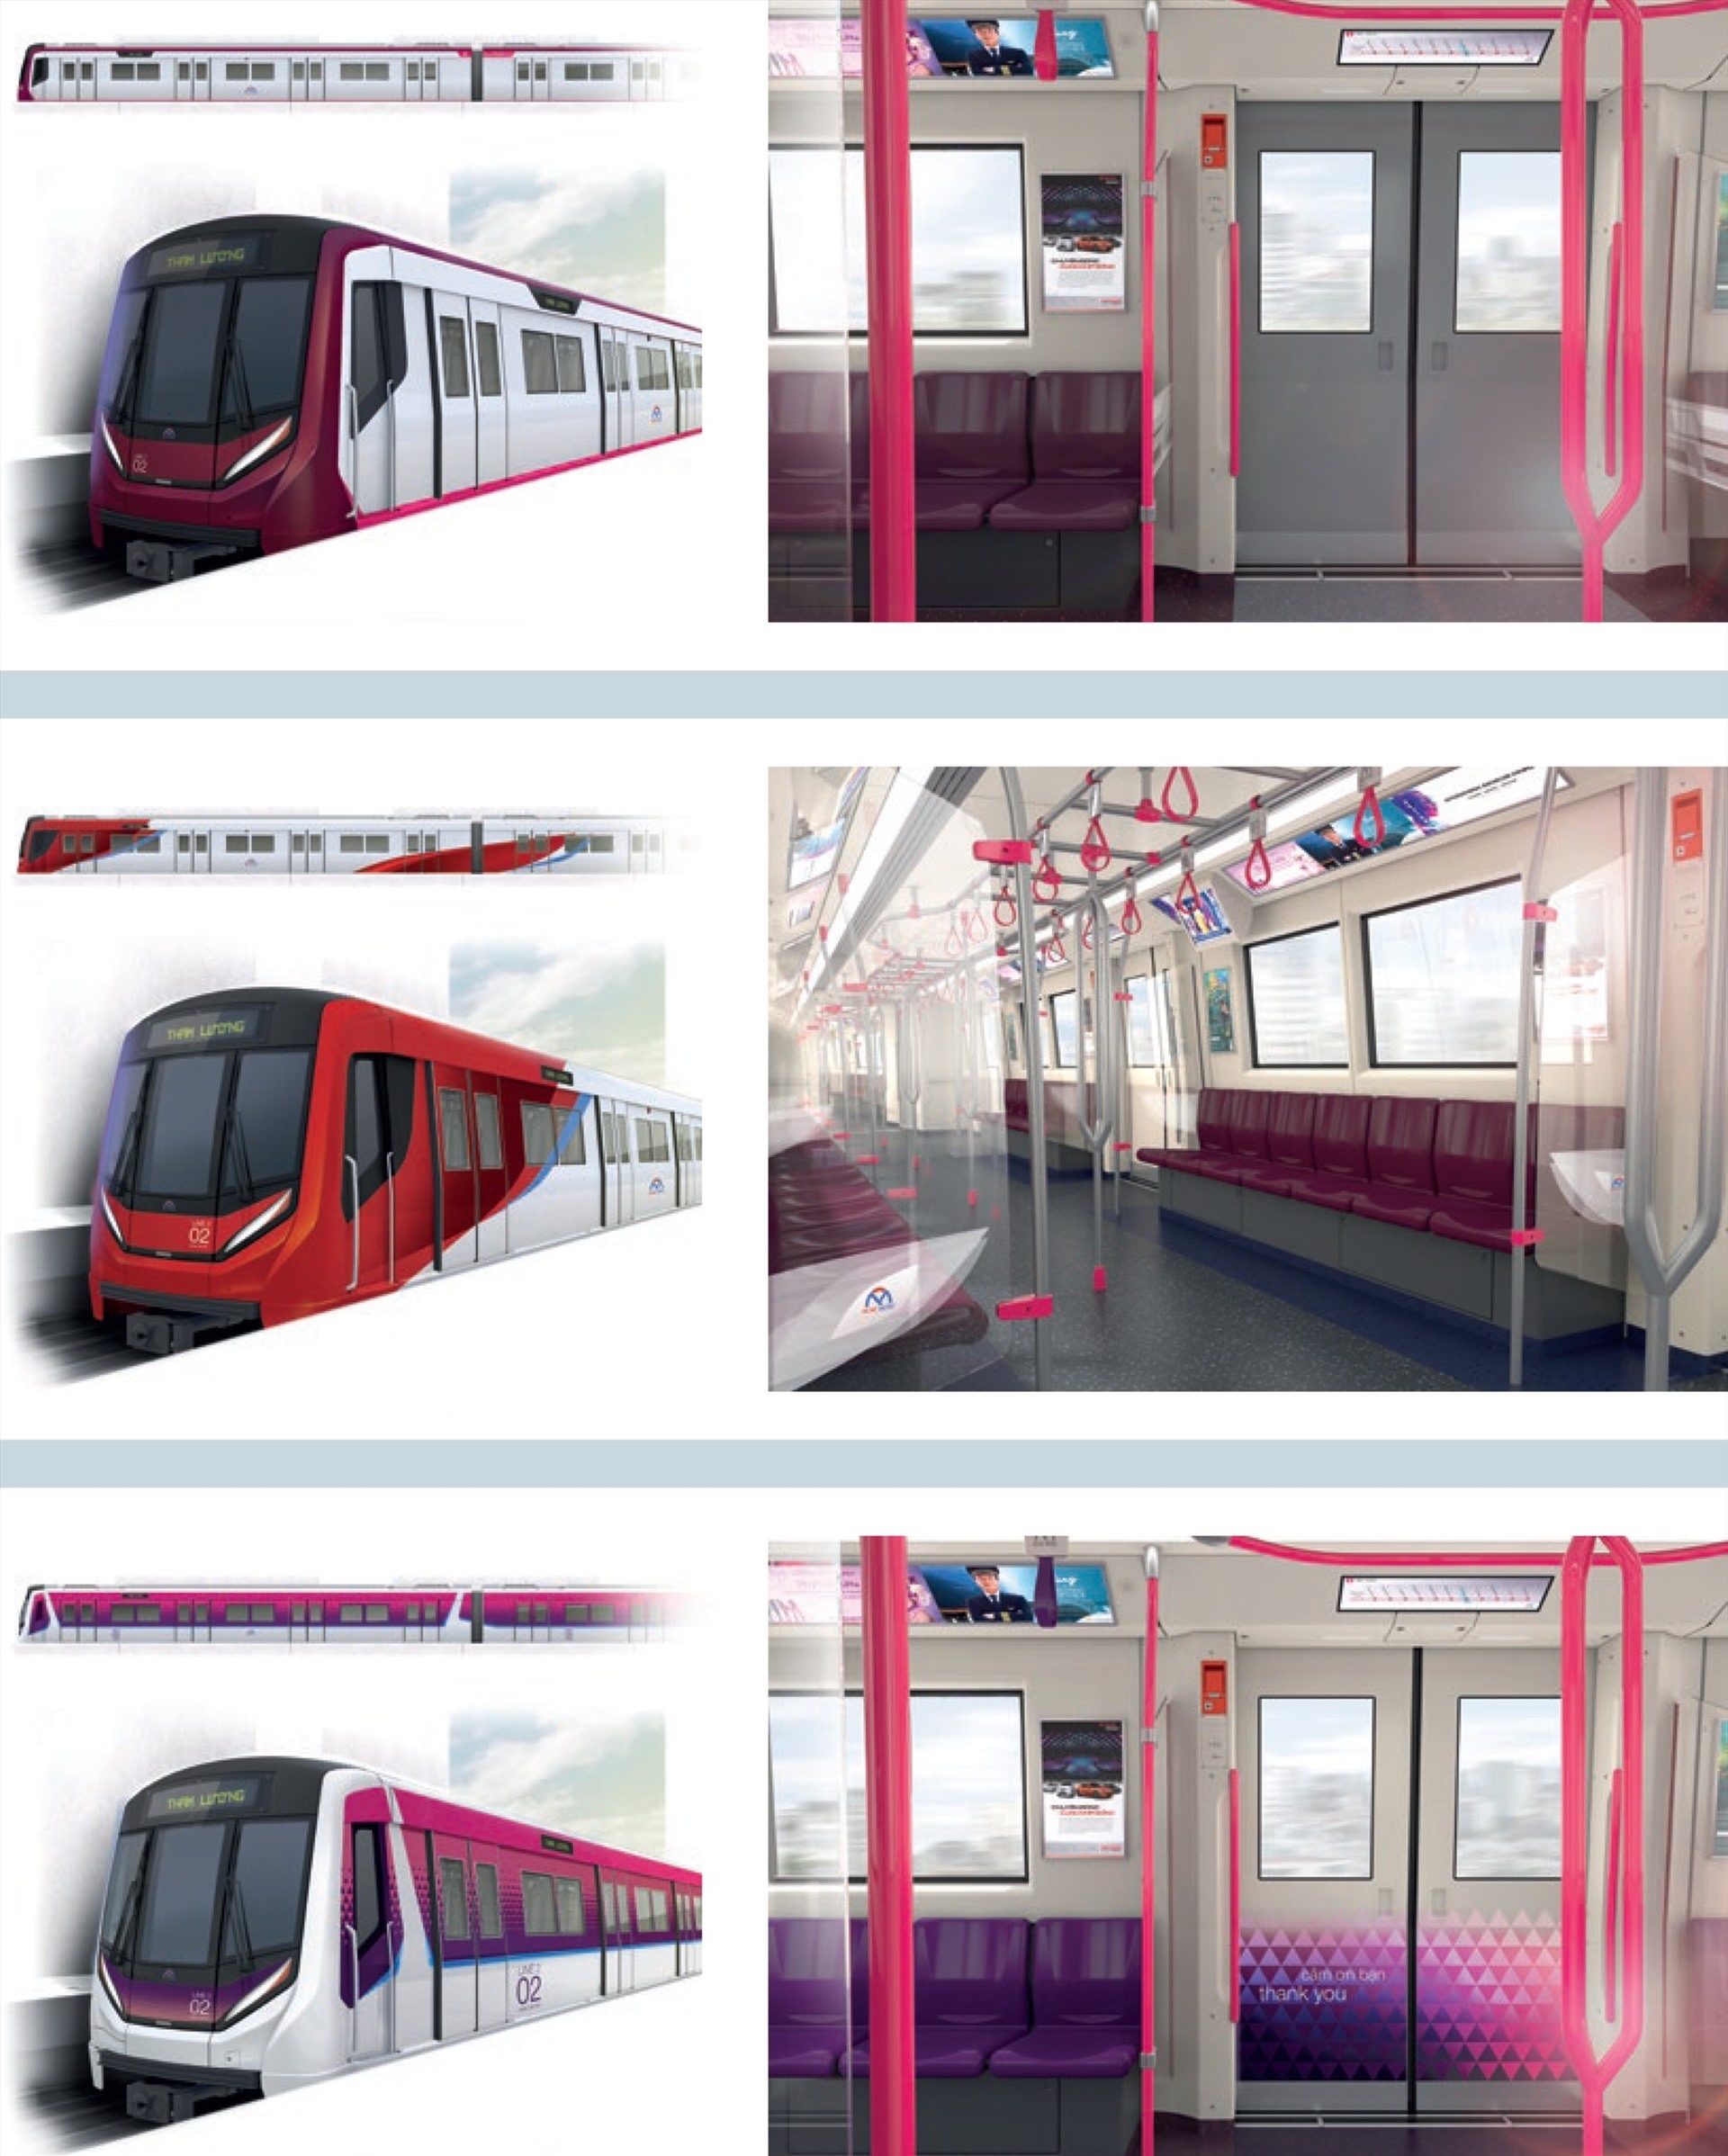 metro-2-metro-ben-thanh-tham-luong-11